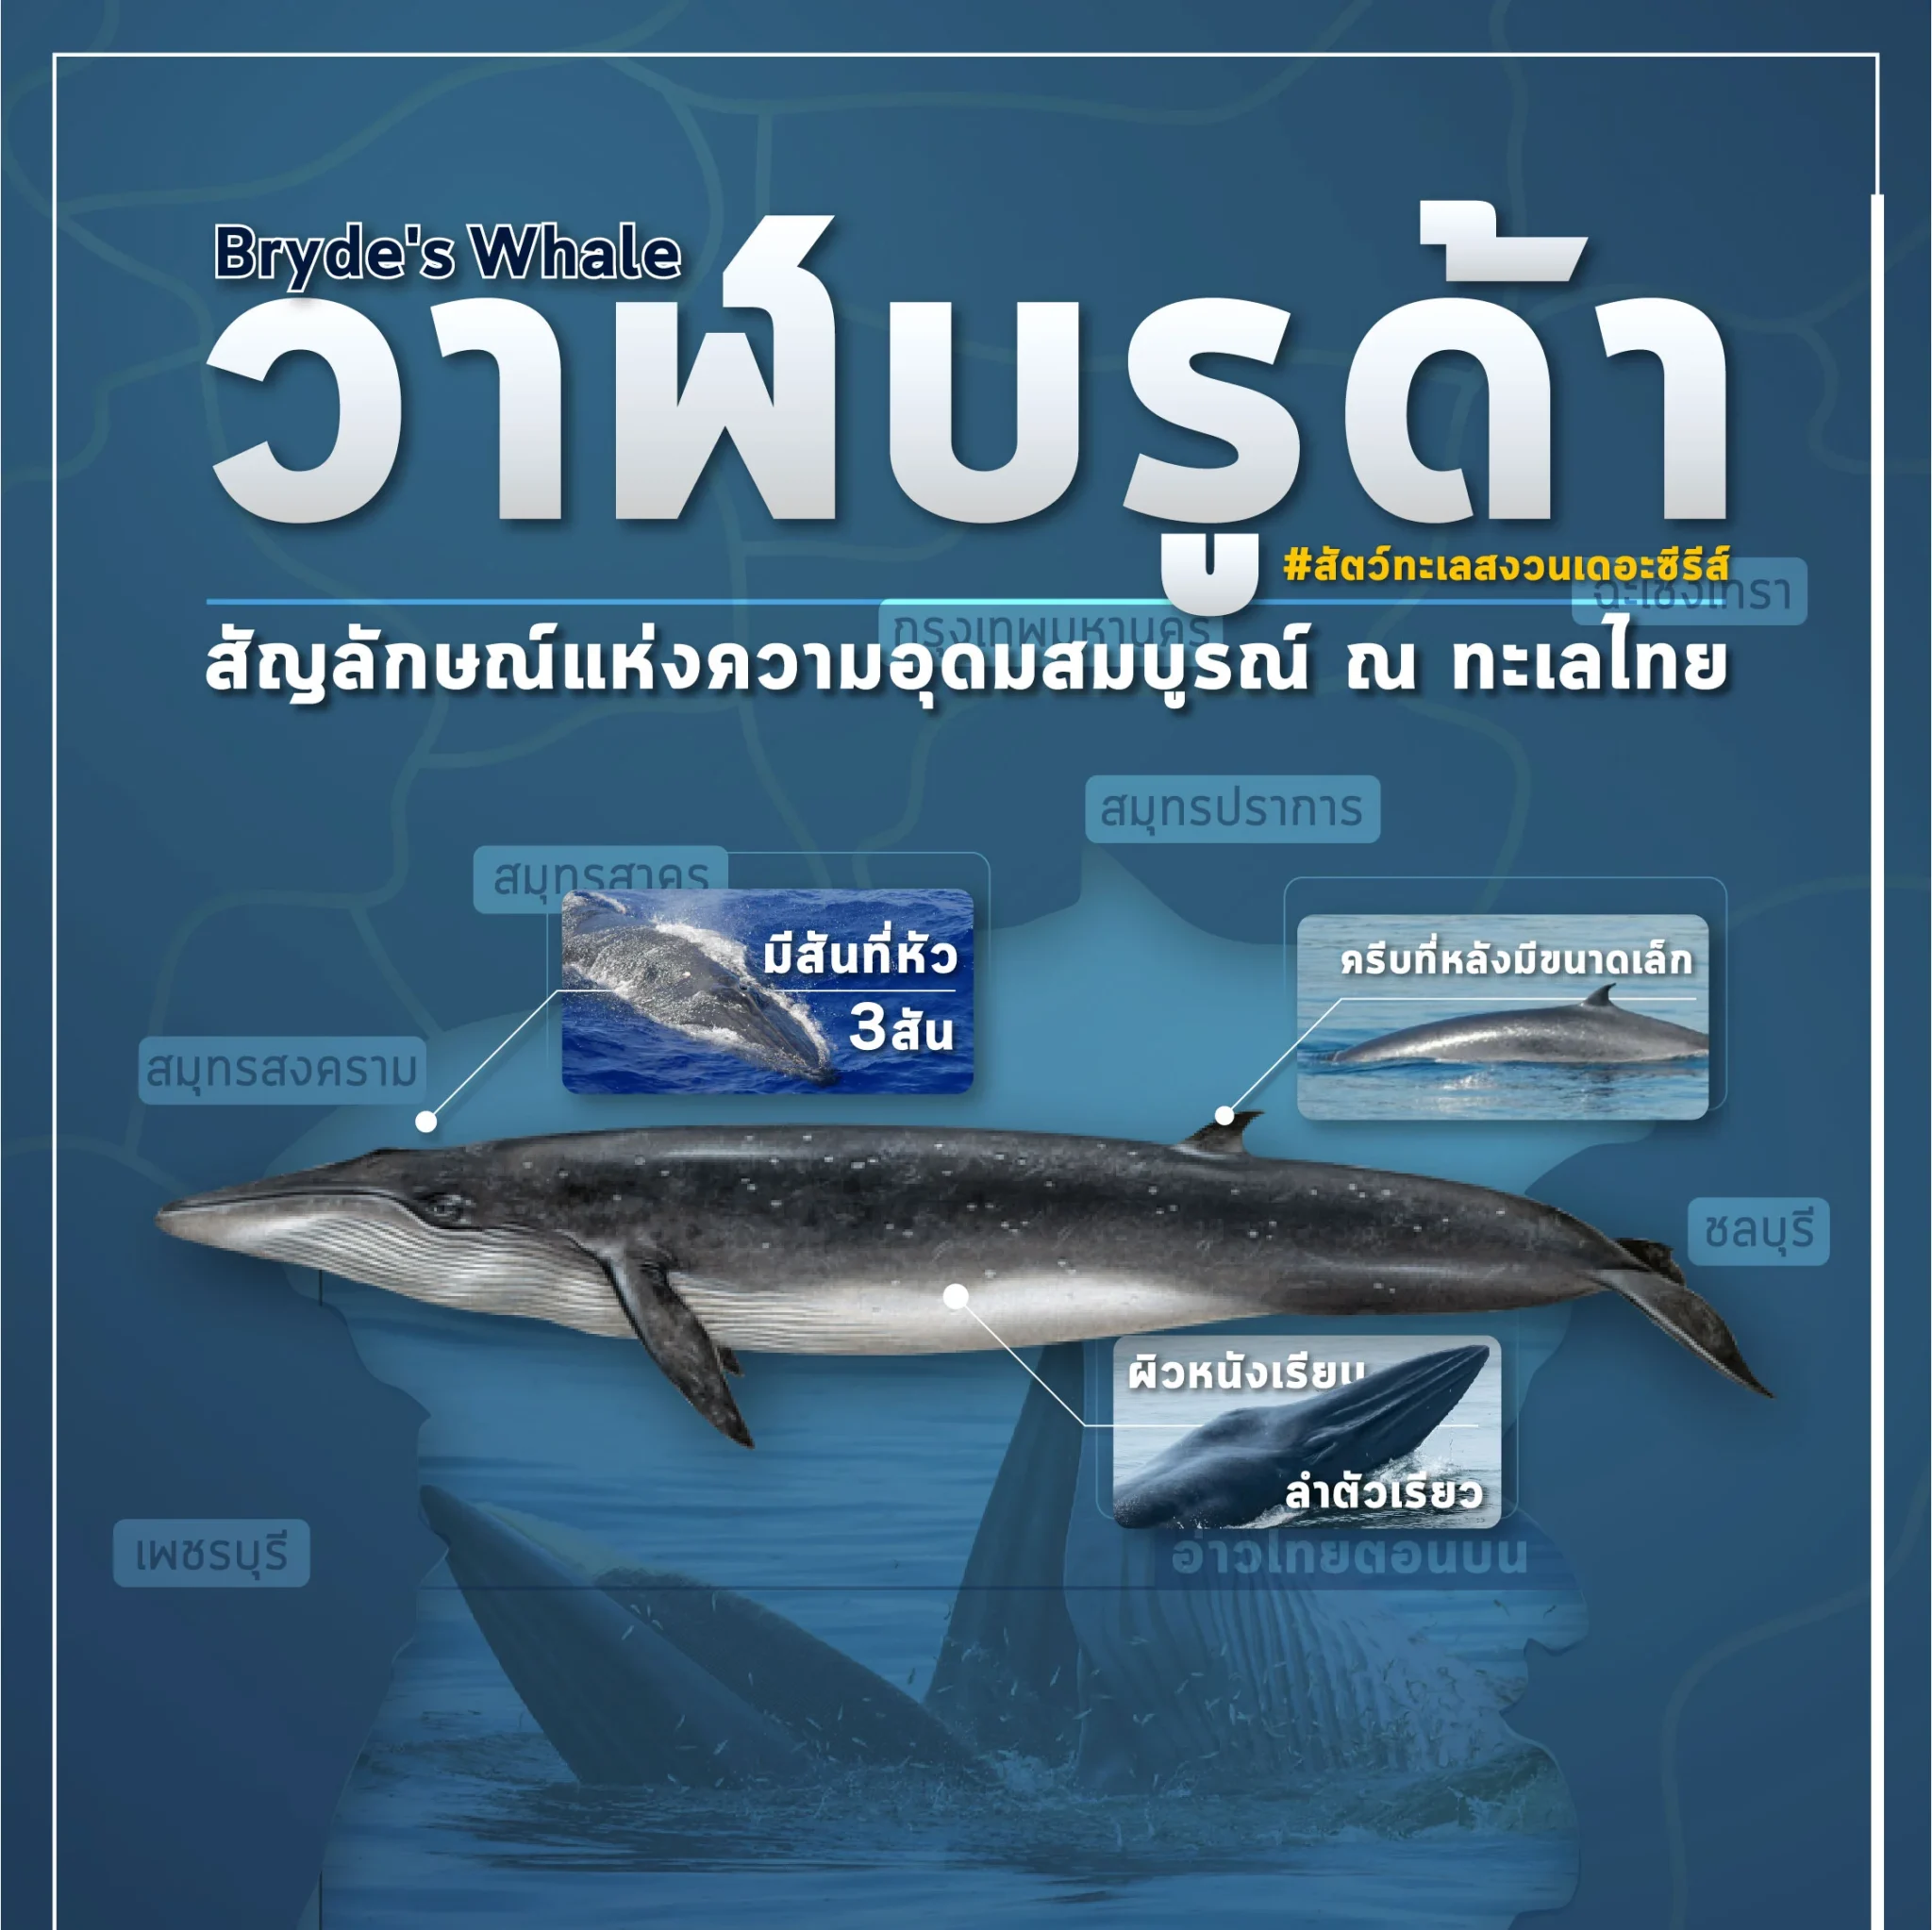 ‘วาฬบรูด้า’ สัญลักษณ์ความอุดมสมบูรณ์ท้องทะเลไทย